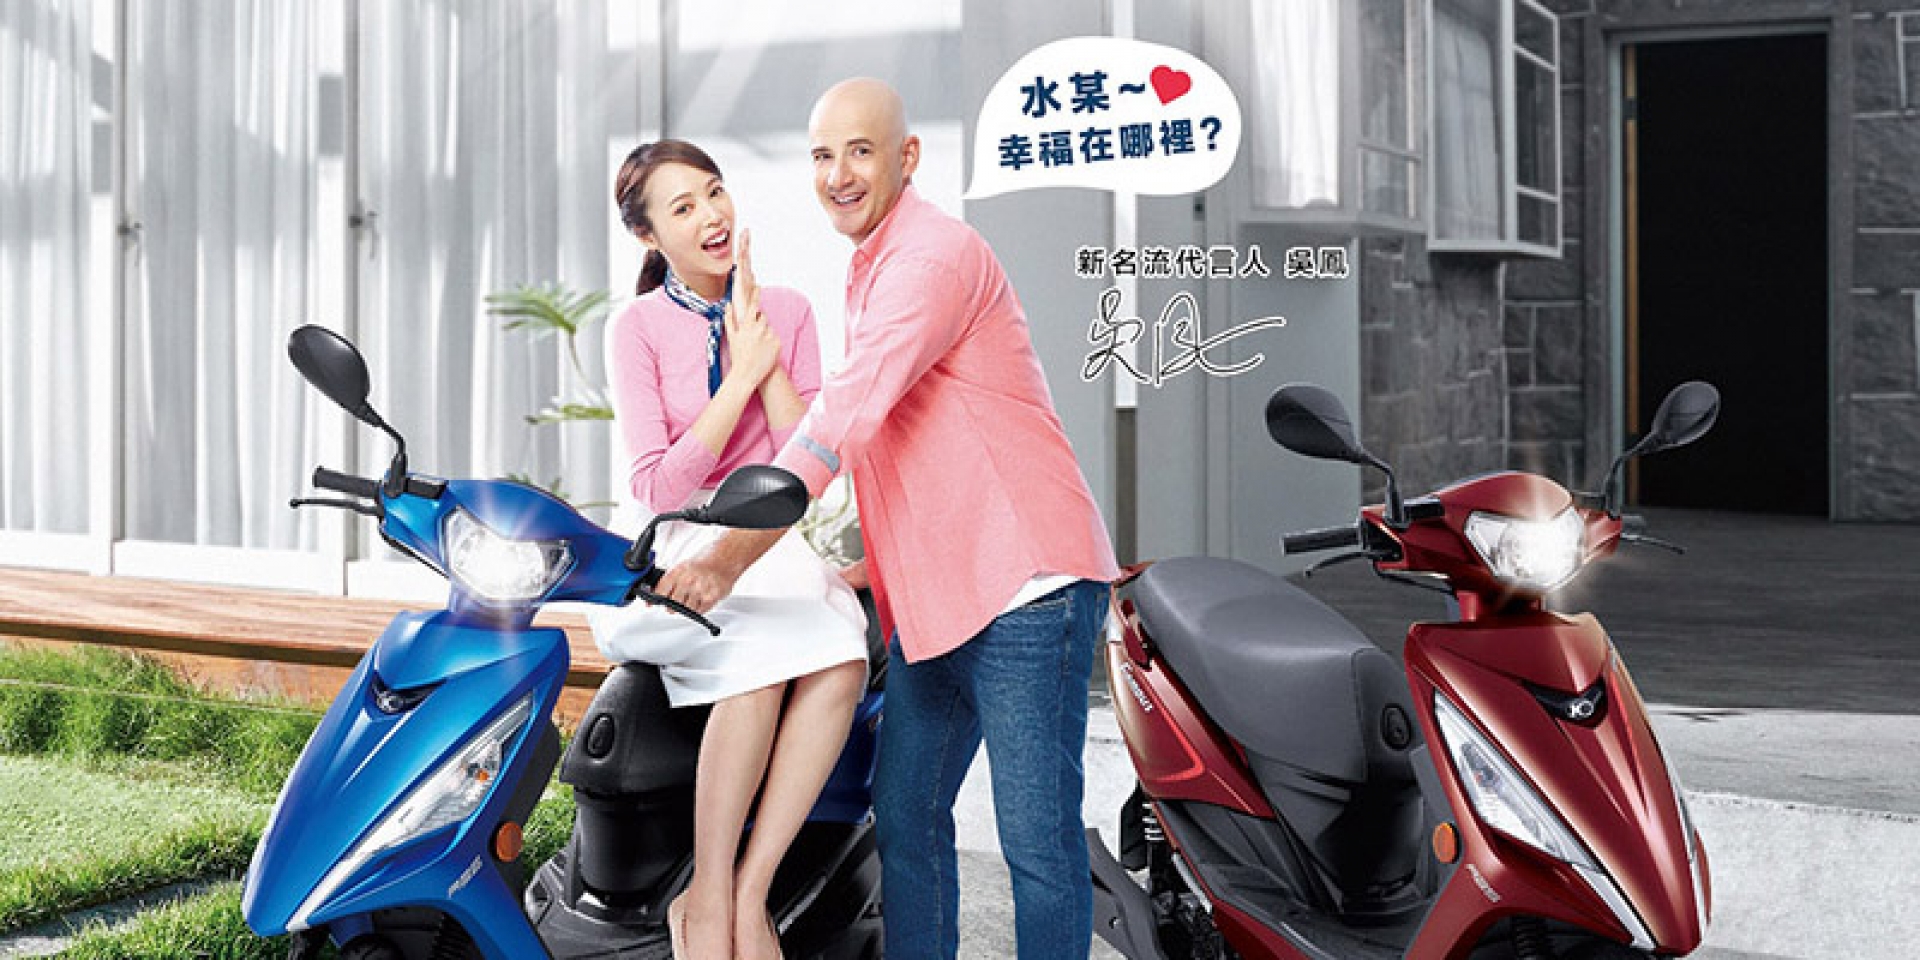 官方新聞稿。台灣女婿吳鳳成KYMCO首位新名流代言人  新名流125ABS版廣告「接地氣」 100%還原在台生活「幸福抵家」！